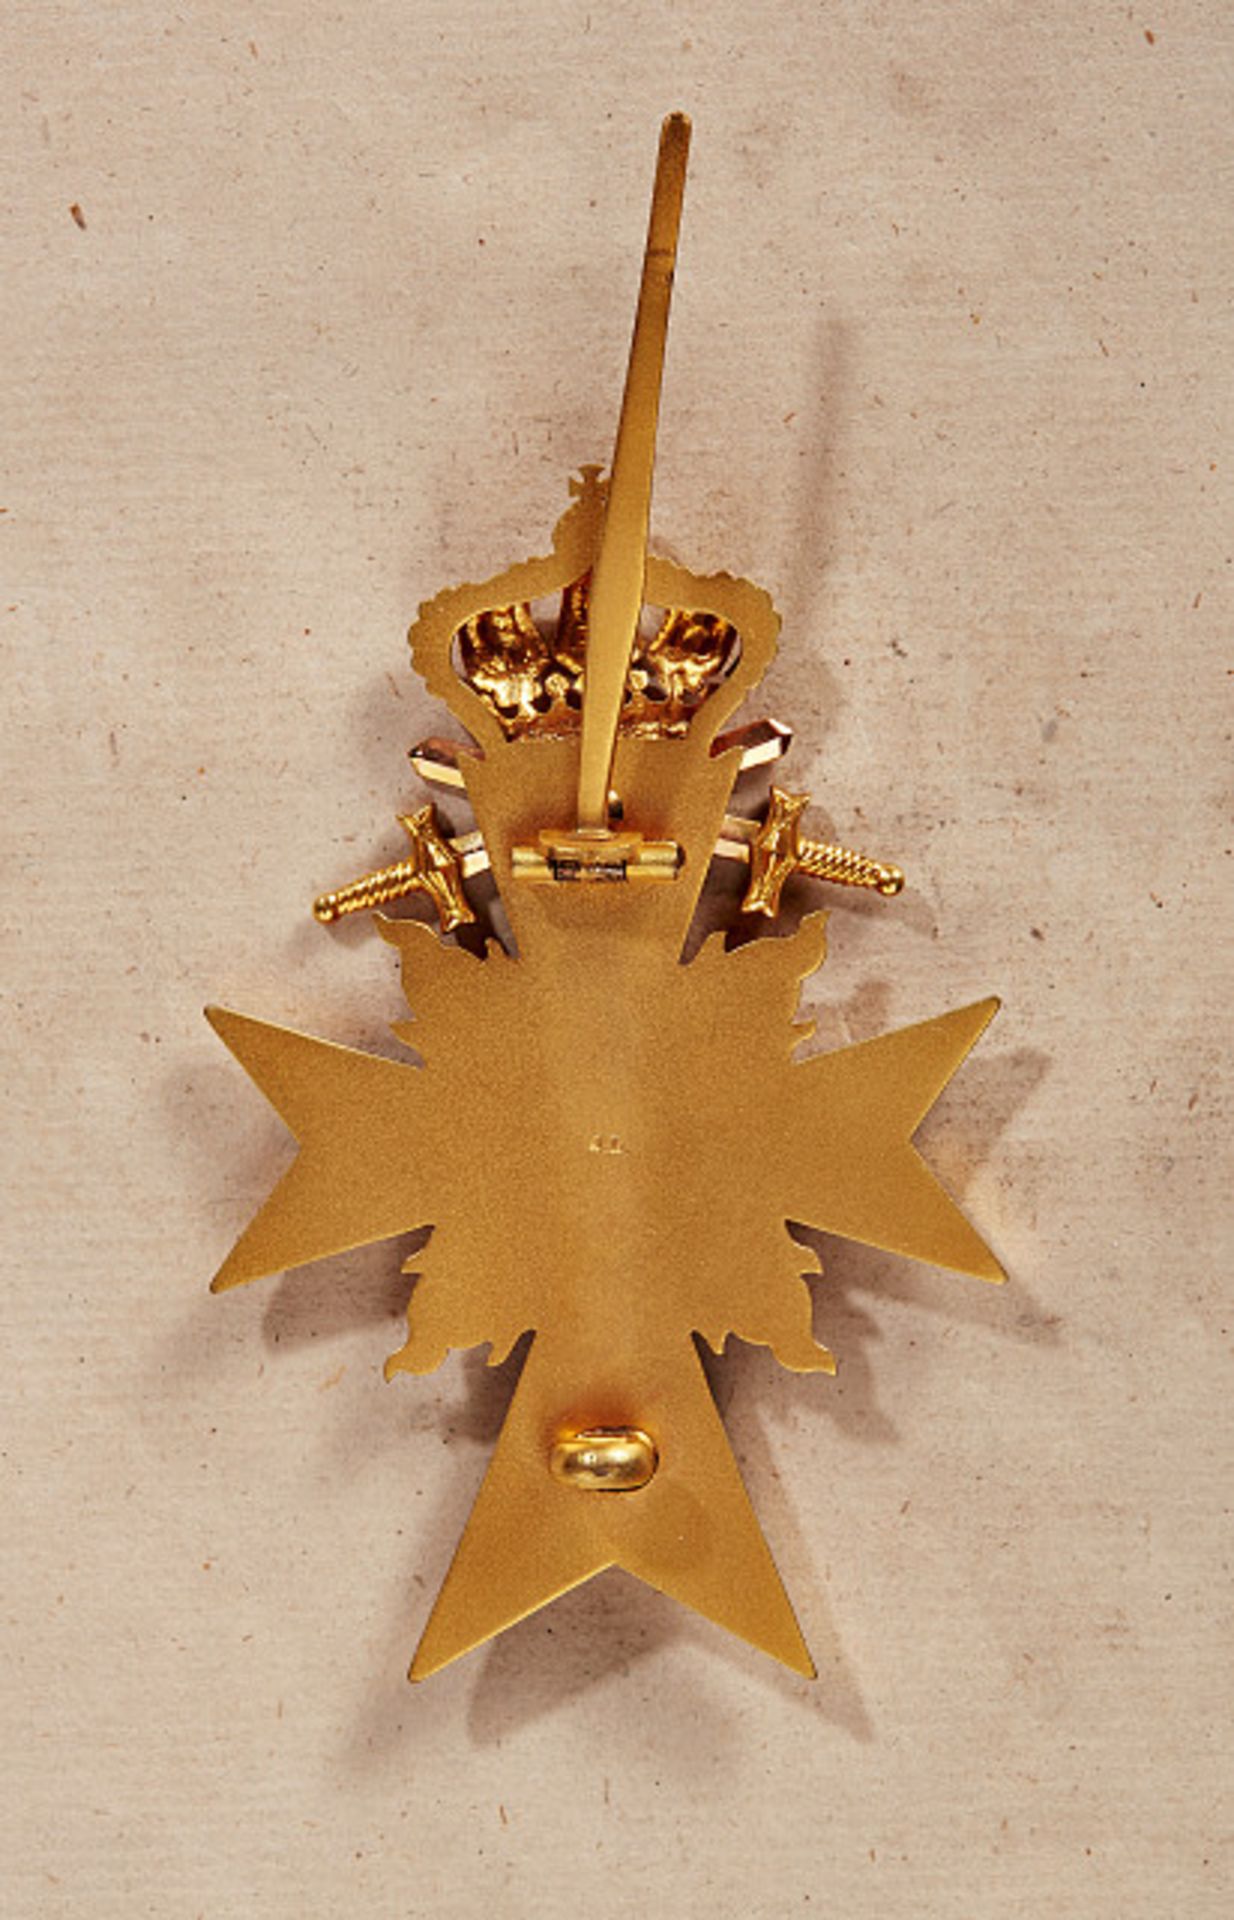 KÖNIGREICH BAYERN - MILITÄRVERDIENSTORDEN : Offizierskreuz mit Schwertern. Gold und Emaille, an - Bild 2 aus 2